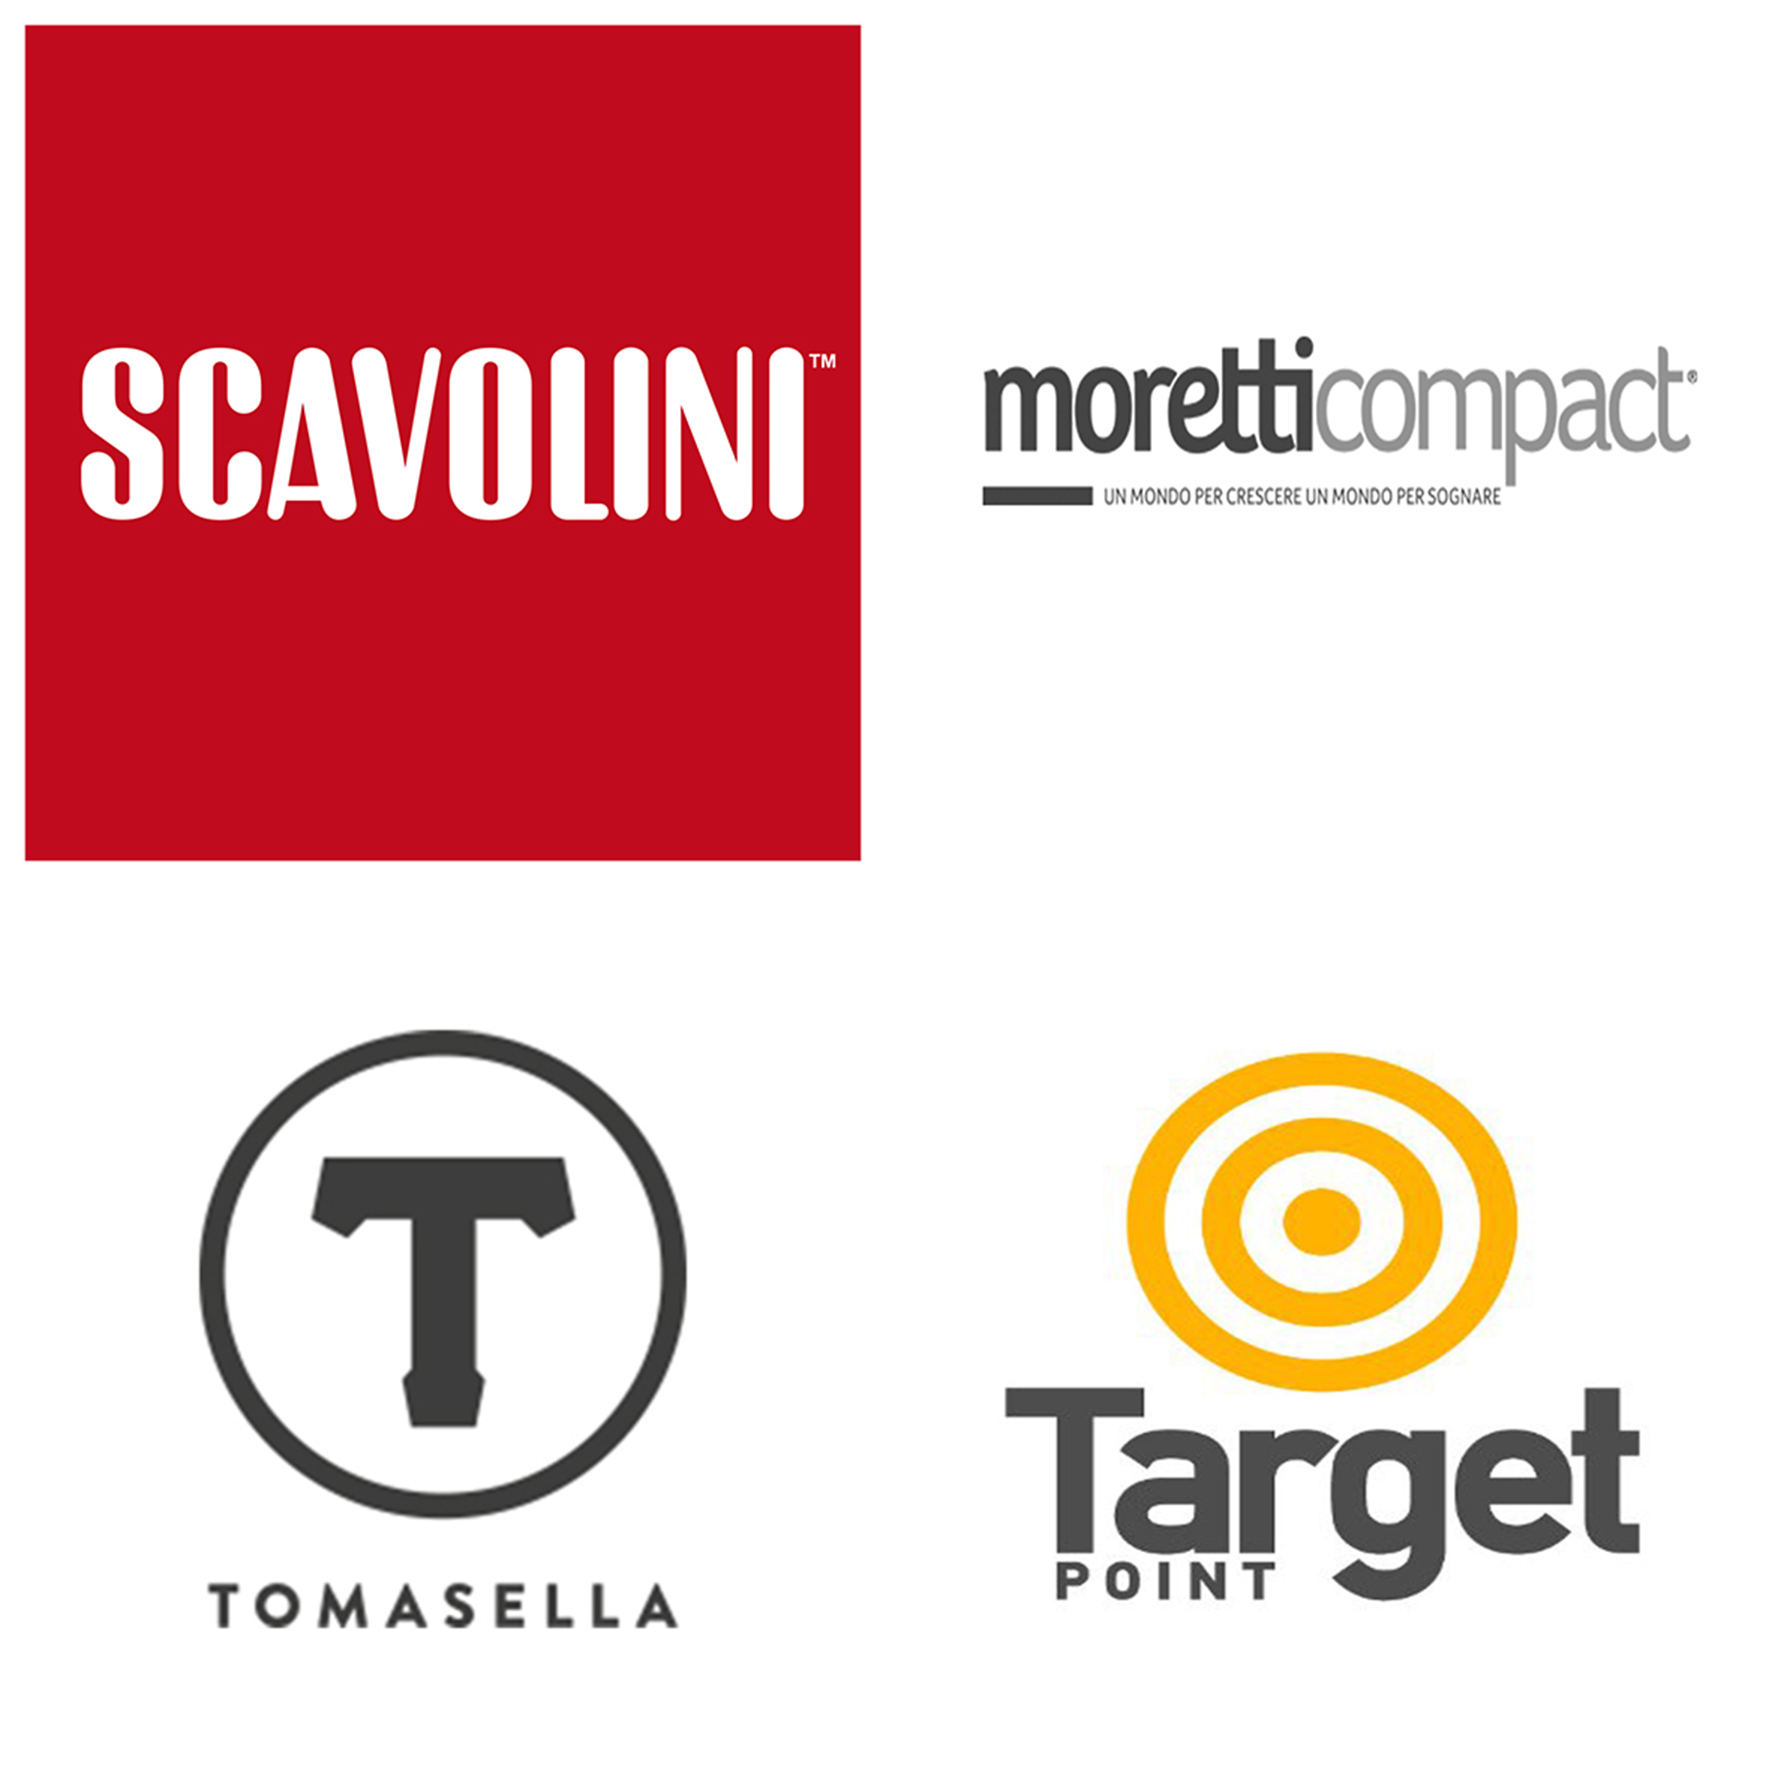 Scavolini, Moretti Compact, Tomasella, Target Point